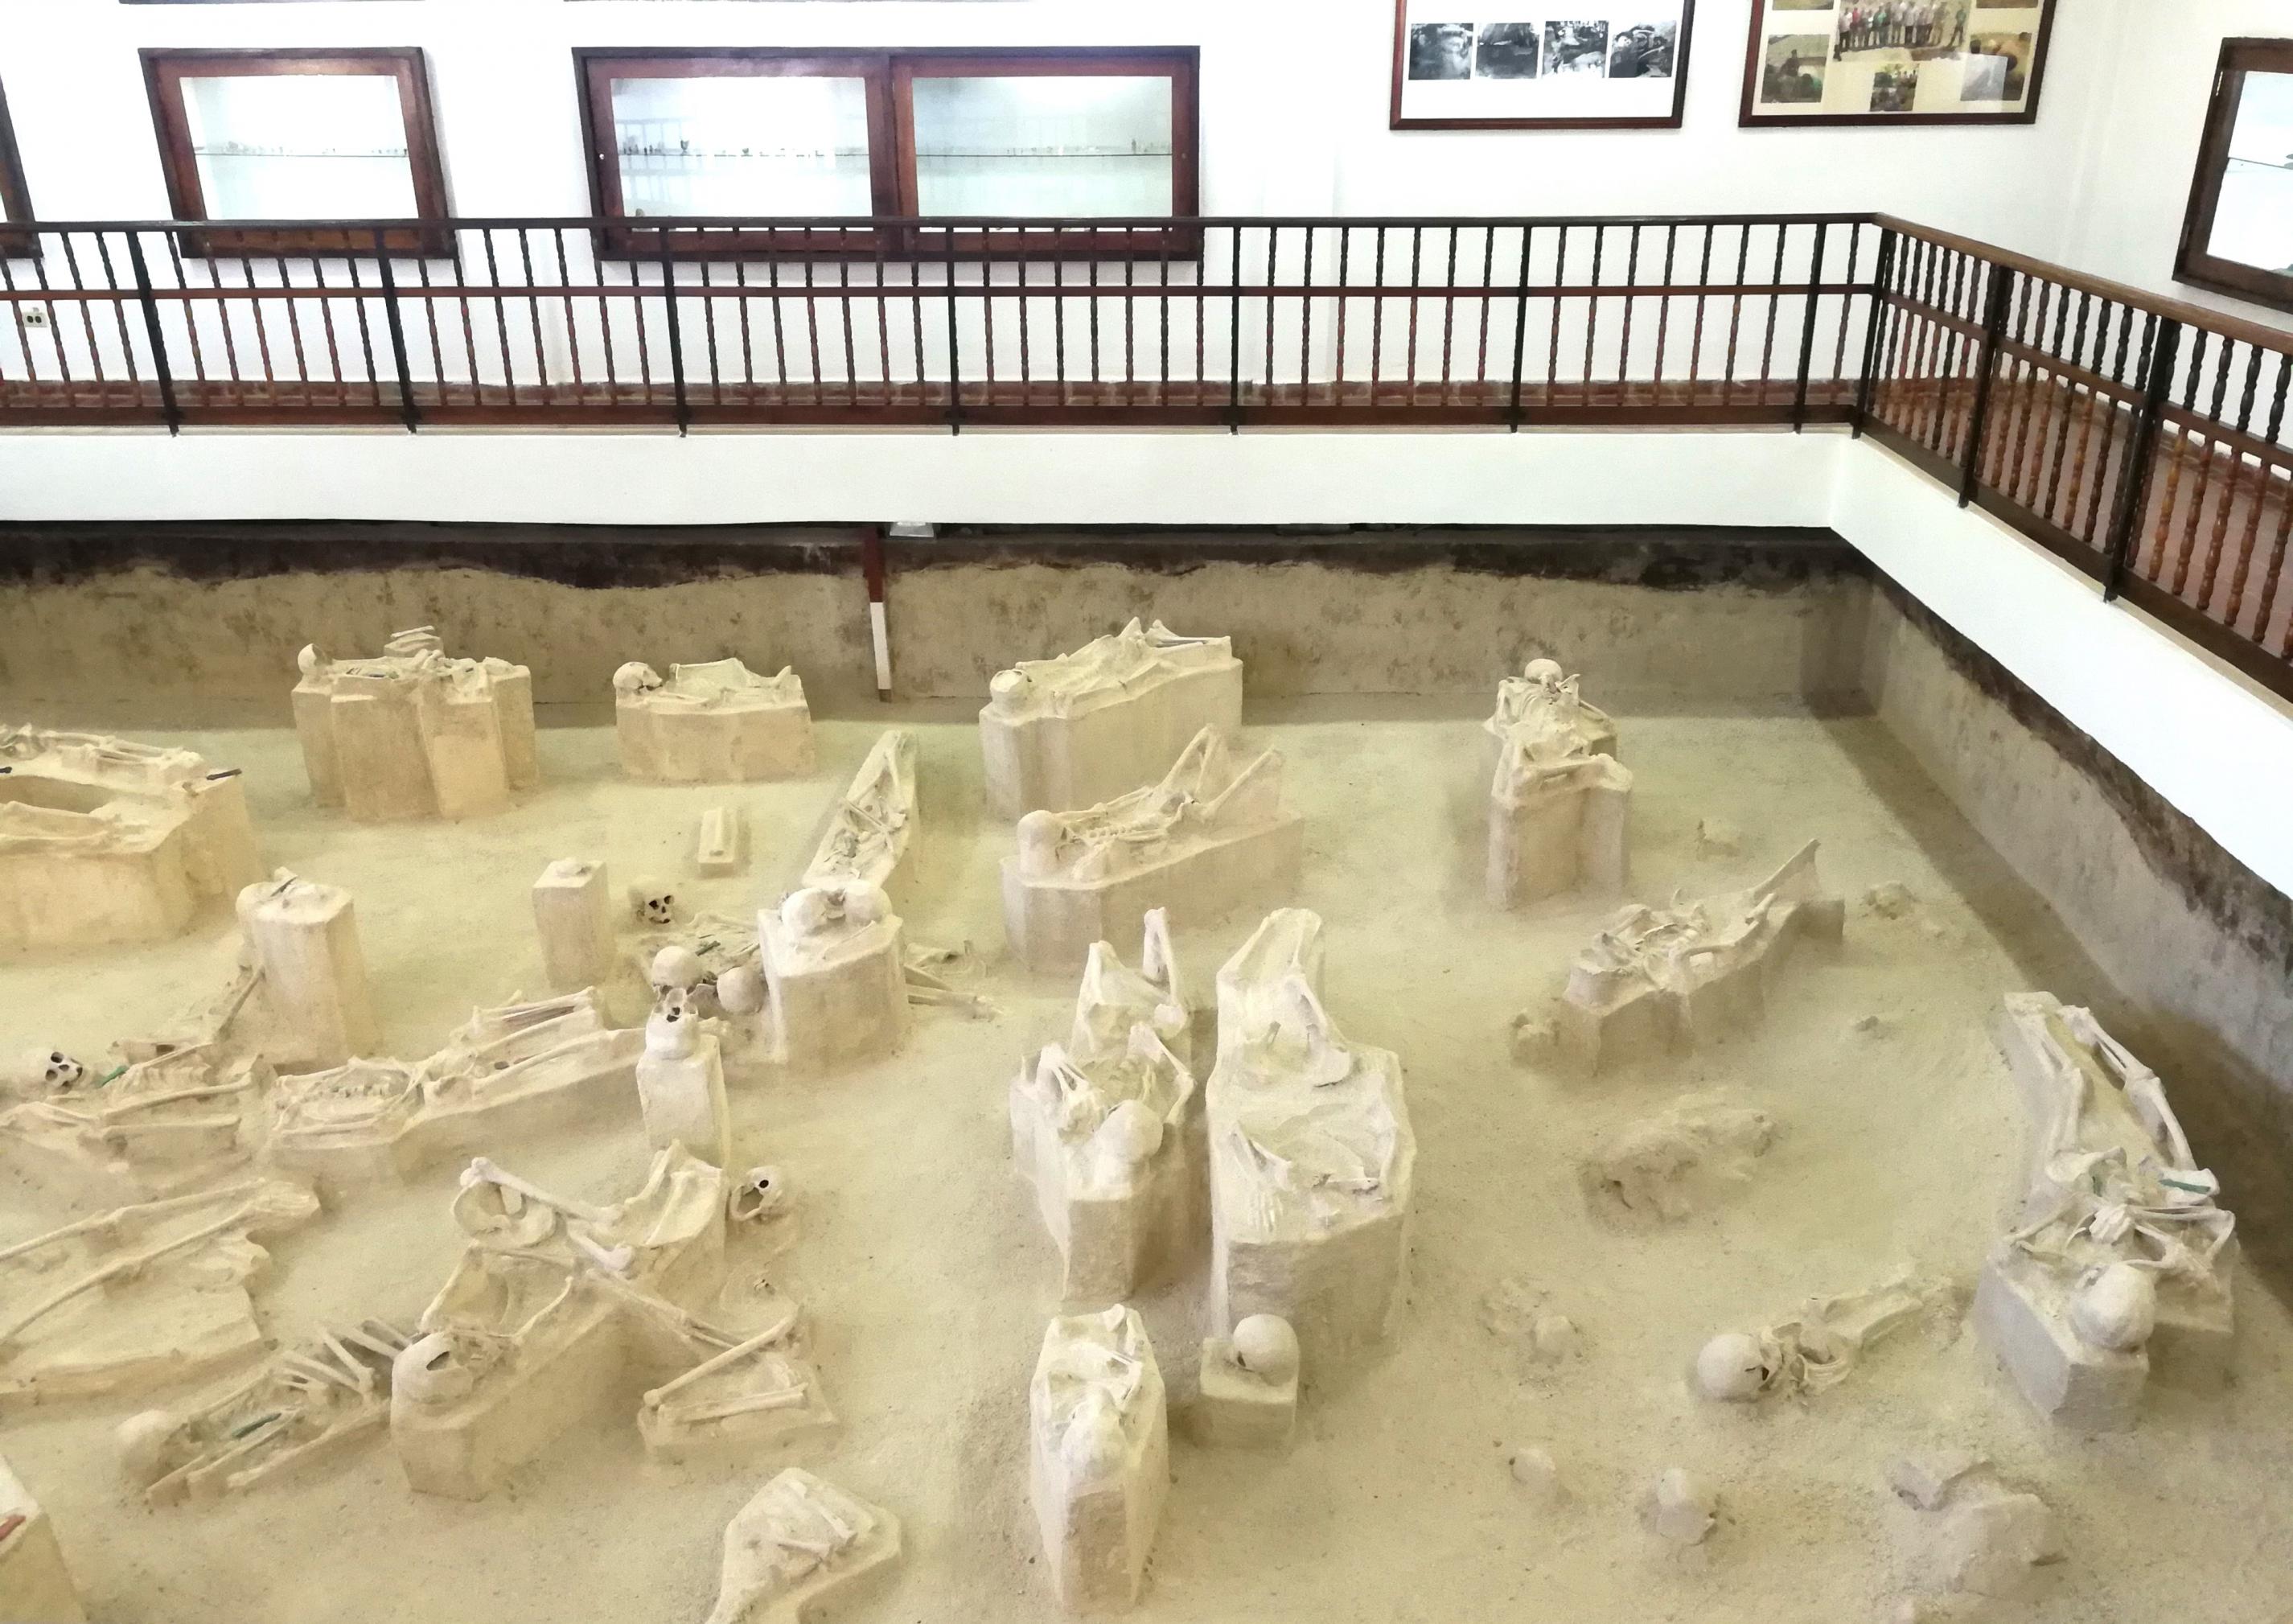 Im Innenraum eines Museums blickt man auf eine freigelegte Gräberfläche, in der mehrere Skelette in verschiedenen Haltungen zu sehen sind.